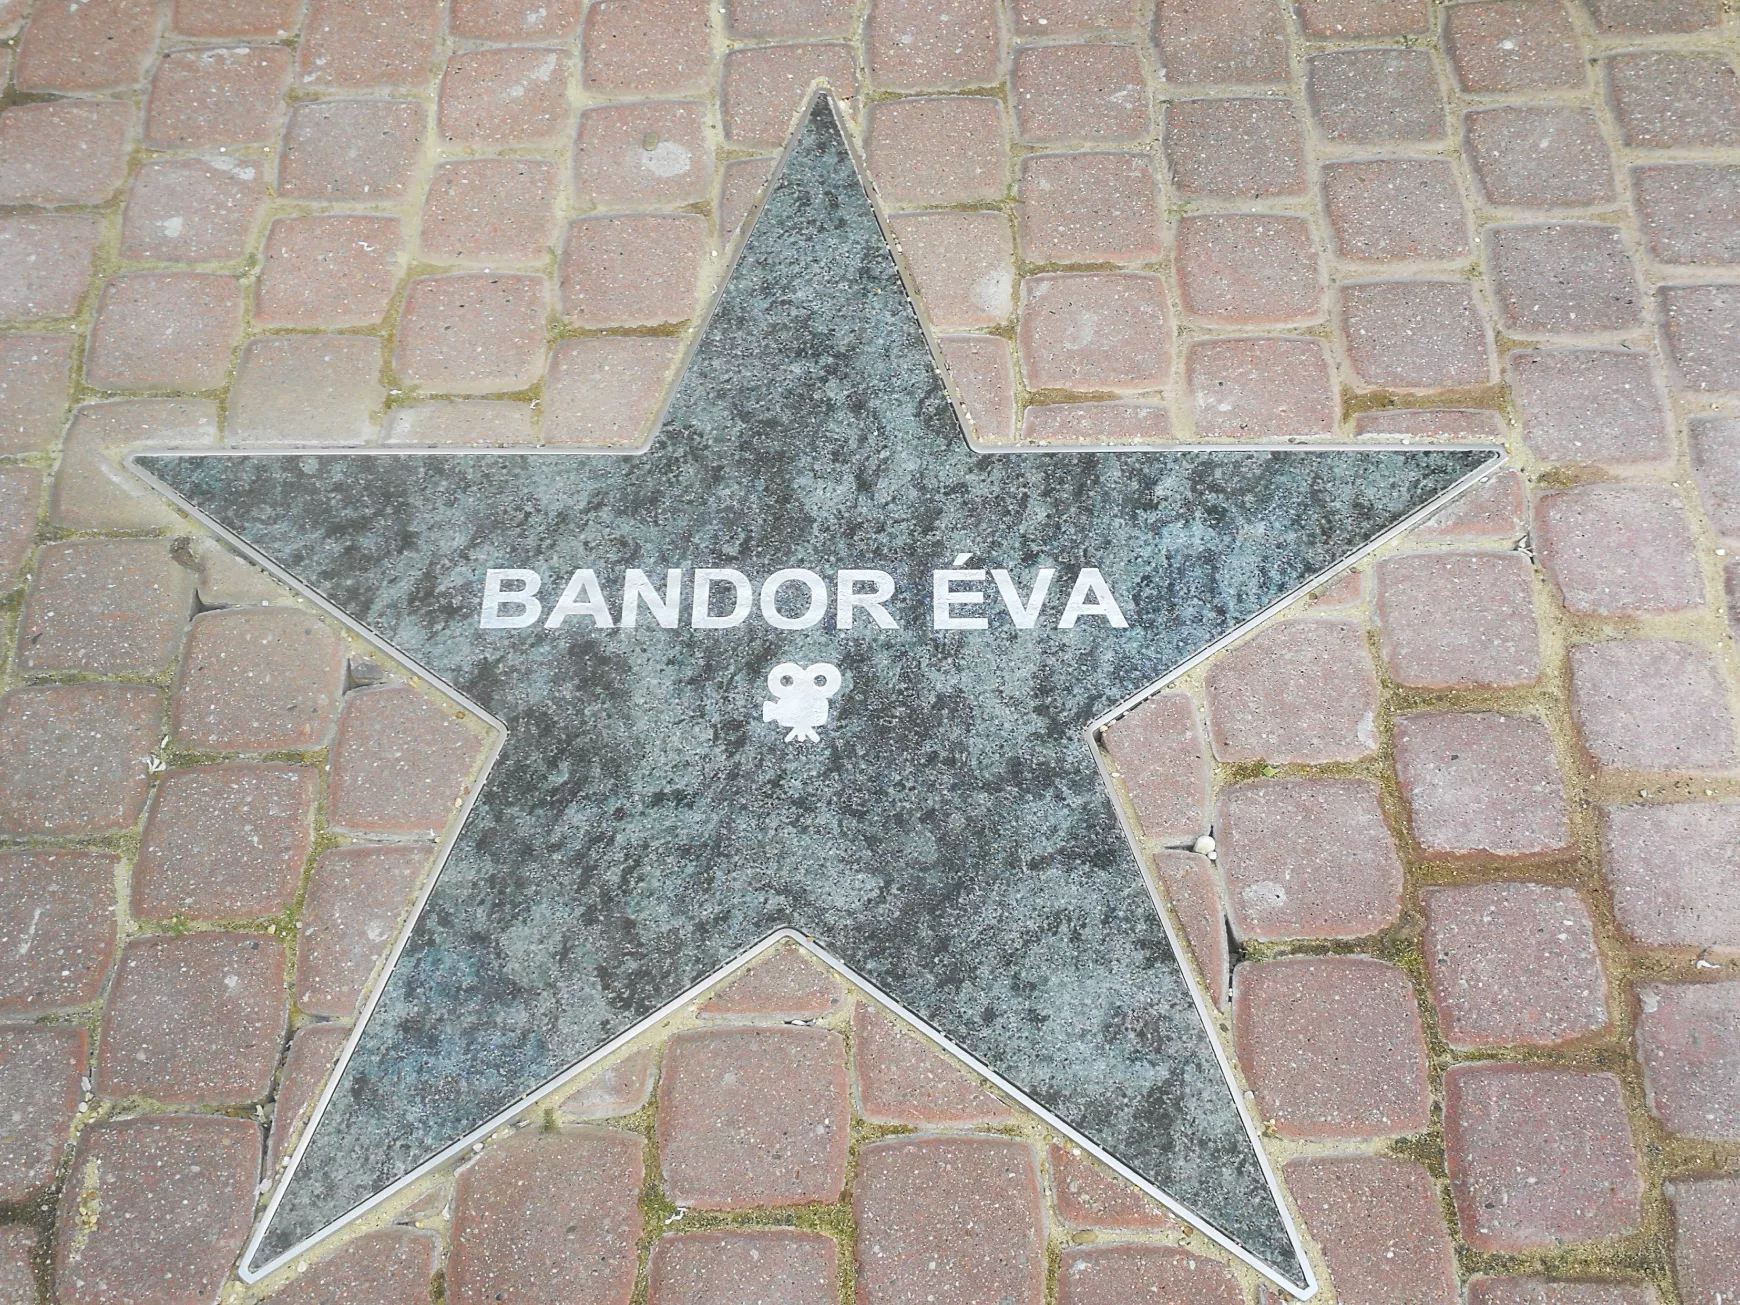  Leleplezték Bandor Éva színművész zöld gránit csillagát Komáromban, a Hírességek sétányán – KÉPEKKEL